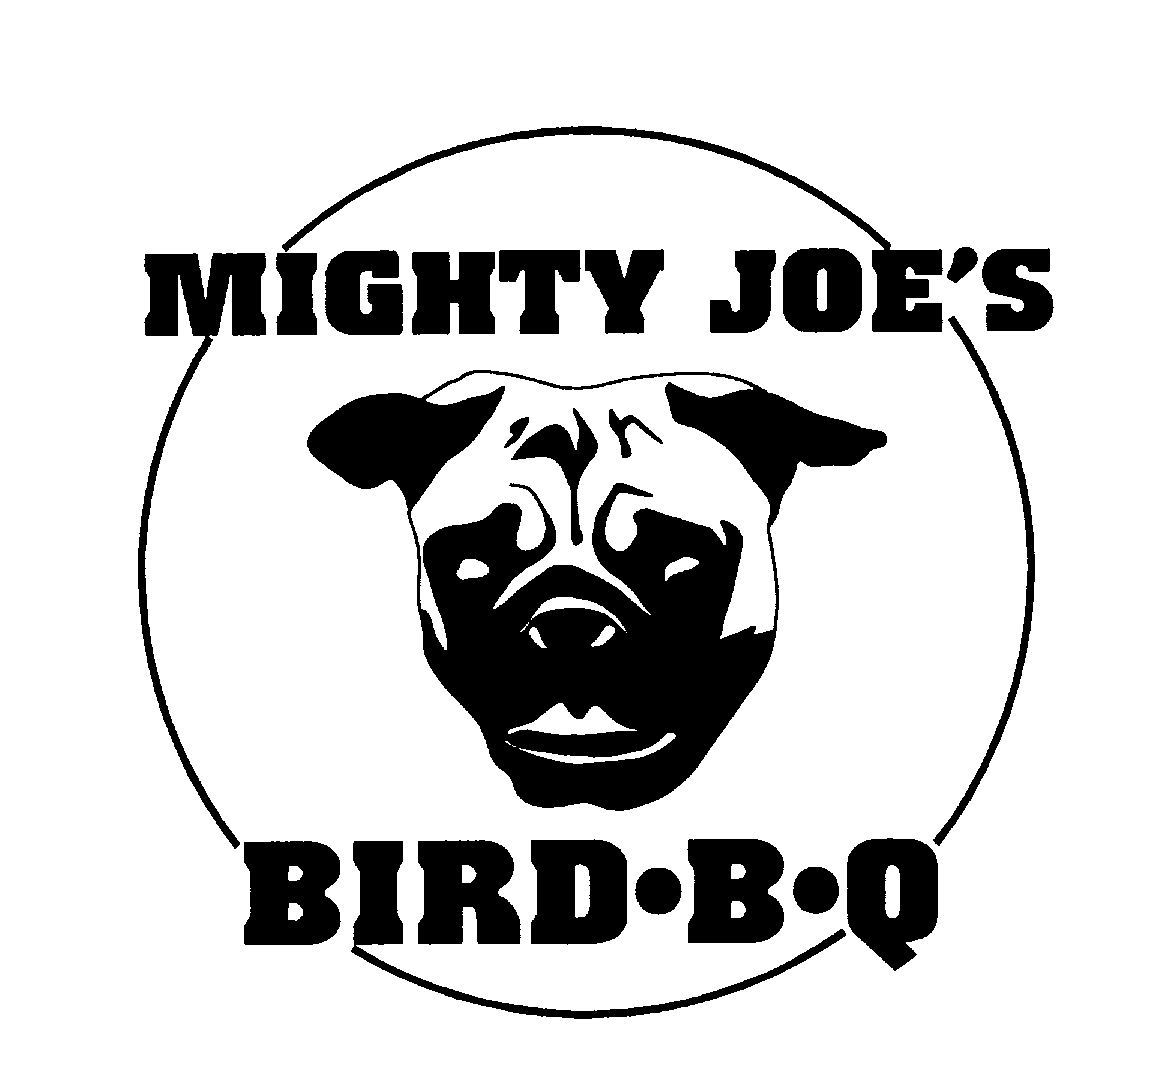  MIGHTY JOE'S BIRD B-Q